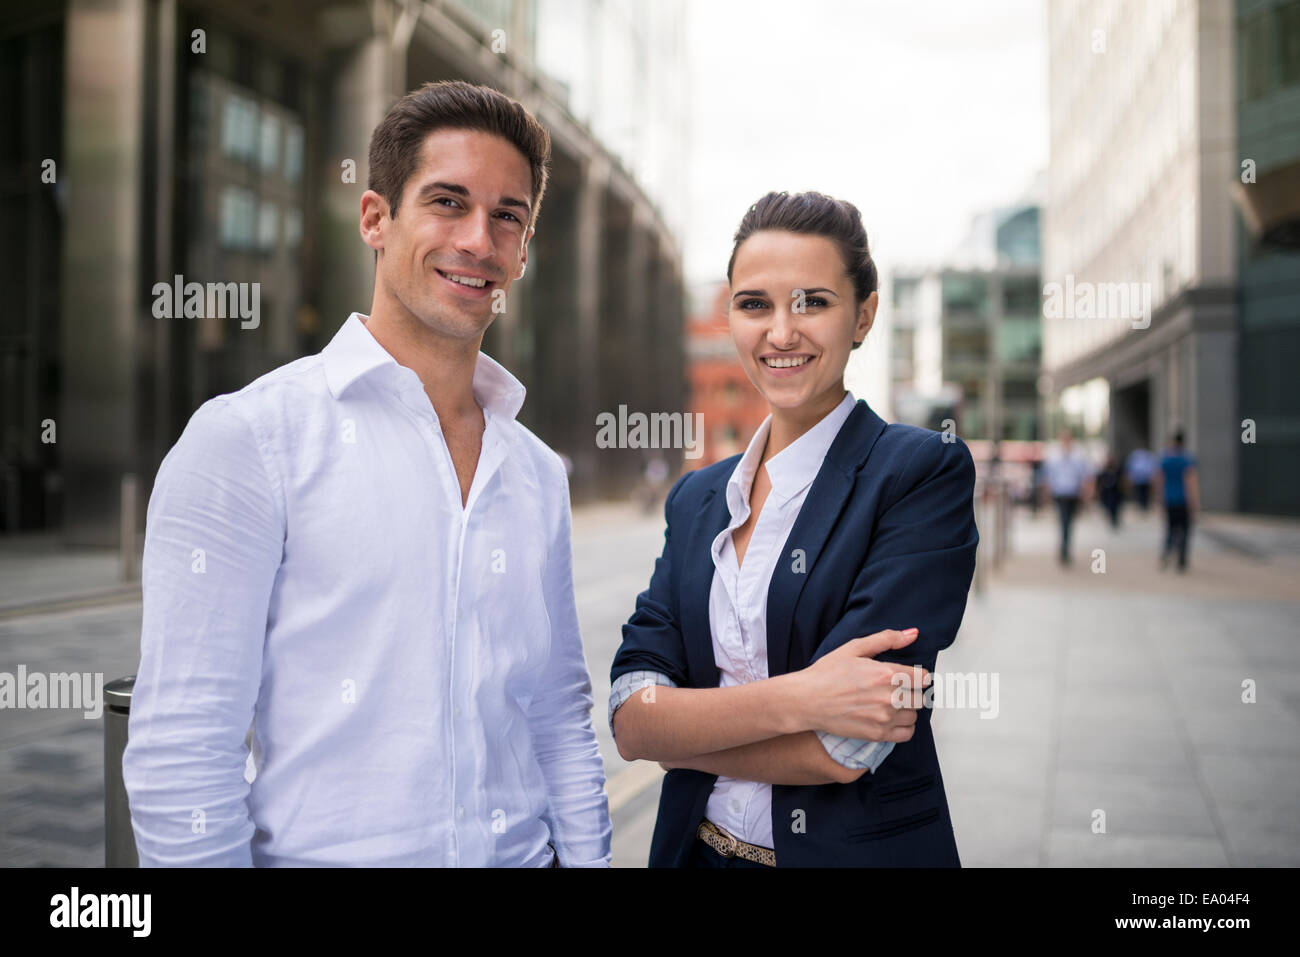 Retrato de jóvenes socios de negocios en street, London, UK Foto de stock